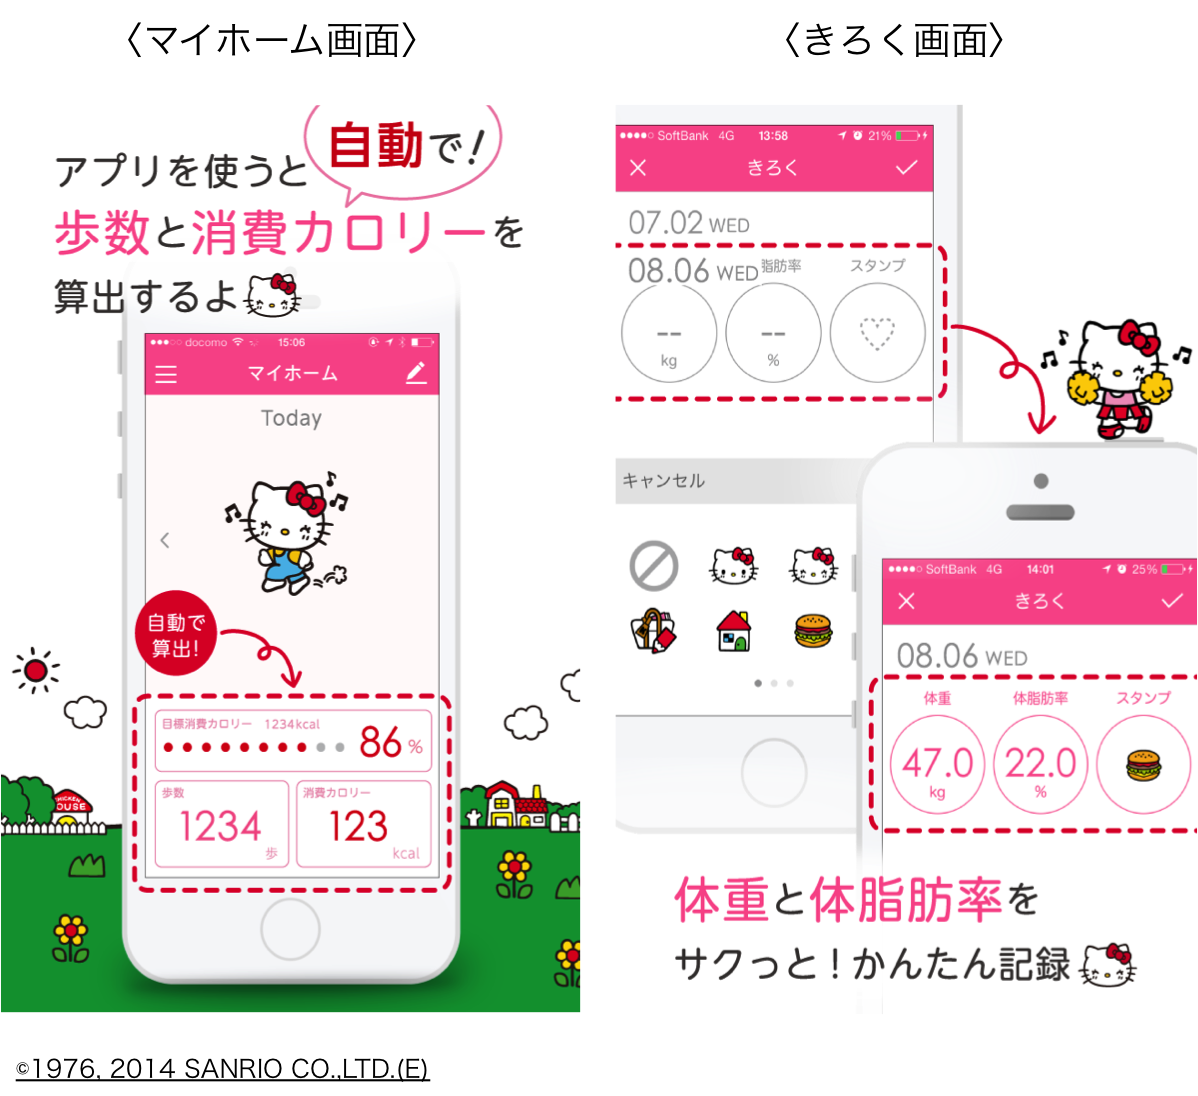 ハローキティと一緒におさんぽダイエット 自動で歩数と消費カロリーを算出する高機能アプリをリリース 株式会社nagisa